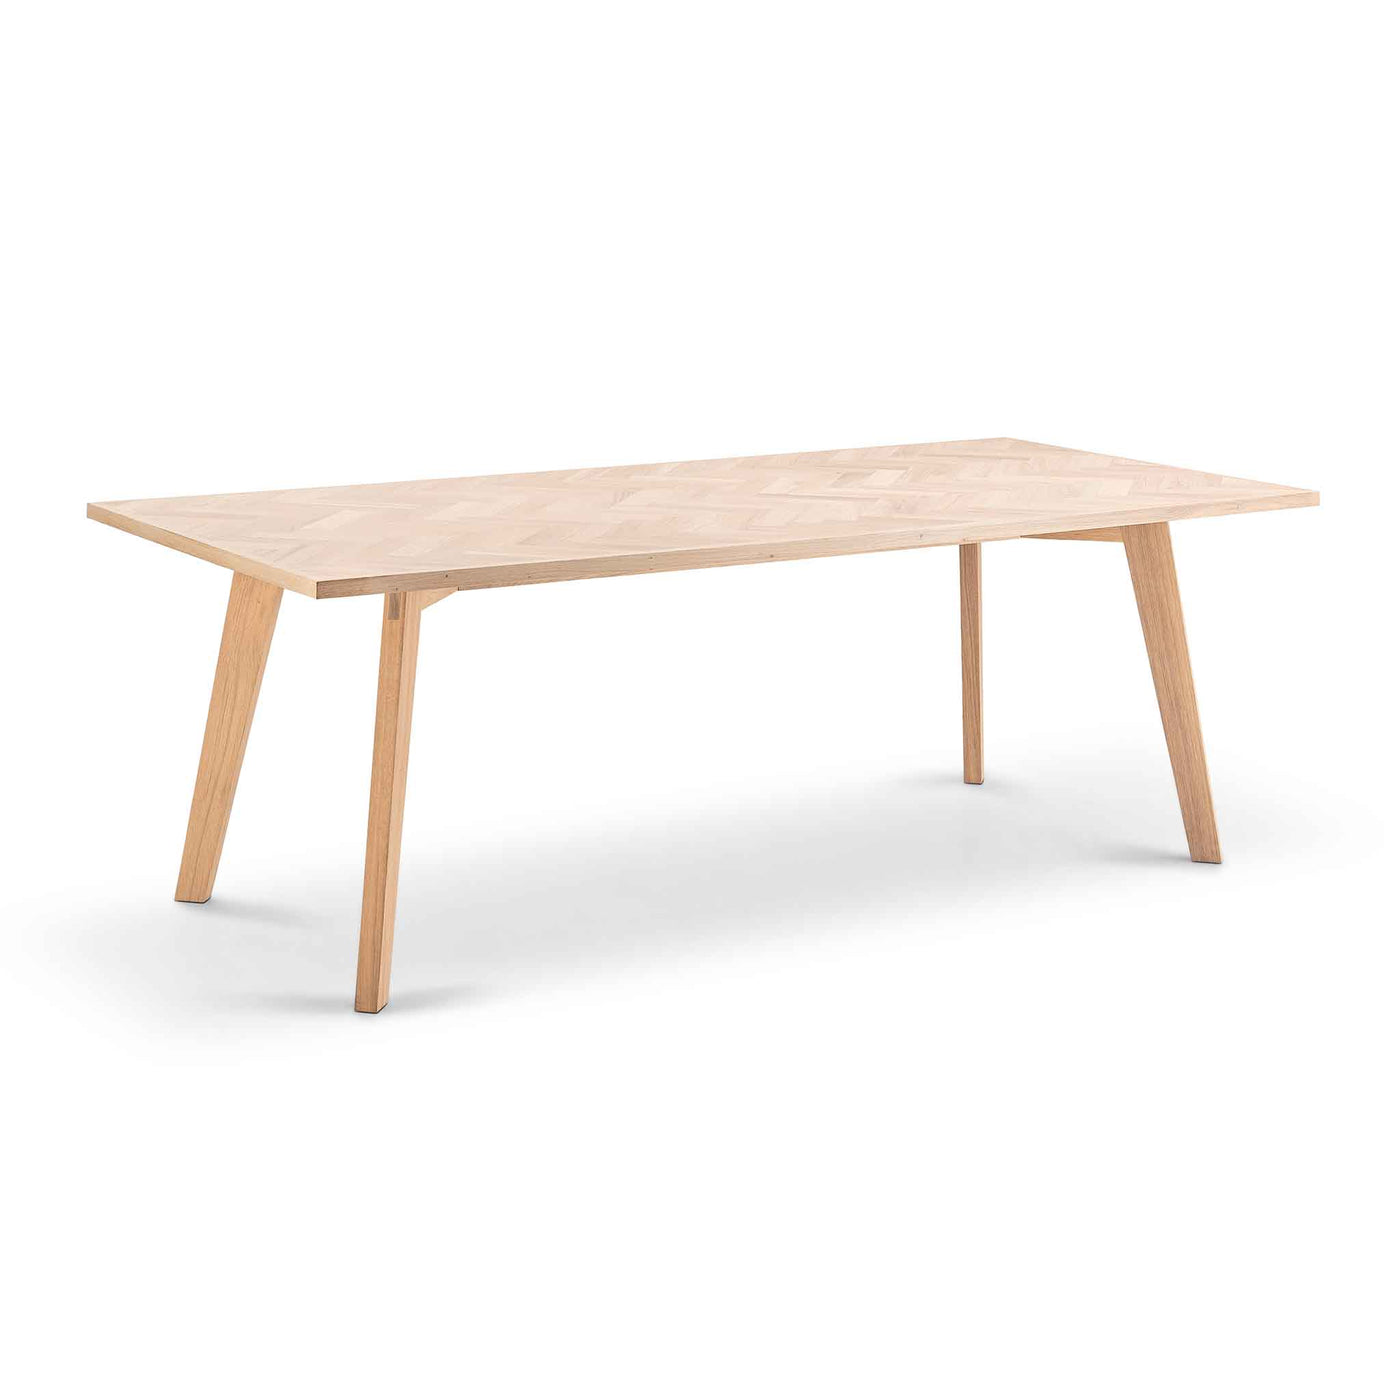 Parquette spisebord med sildebensmønster 100x220cm i hvidolieret eg fra Kristensen & Kristensen